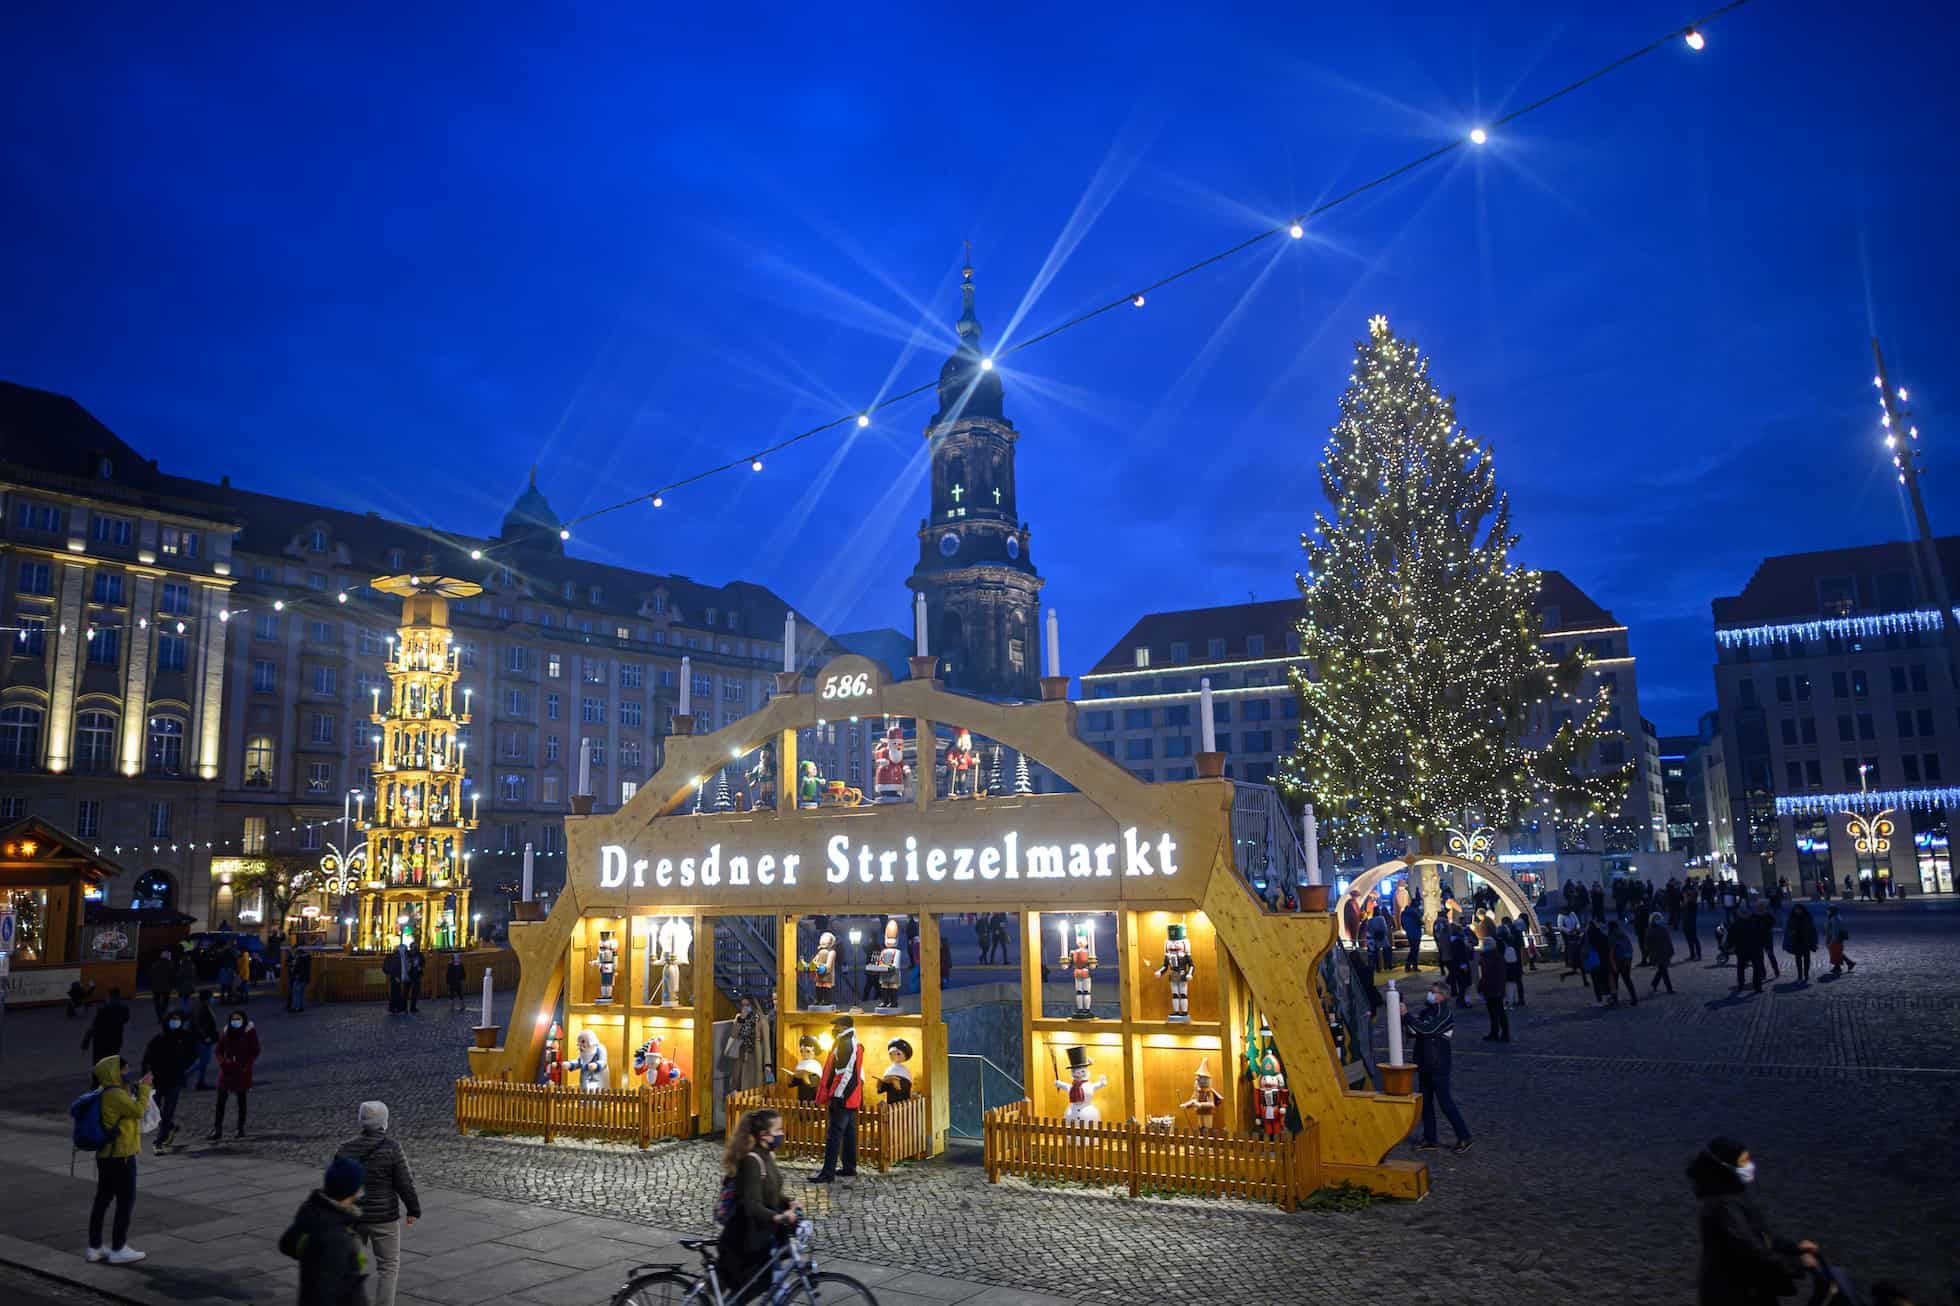 Der Dresdner Striezelmarkt ist der älteste urkundlich erwähnte Weihnachtsmarkt der Welt. Er findet seit 1434 statt. Zum Vergleich: Den Nürnberger Christkindlesmarkt gibt es erst seit Mitte des 17. Jahrhunderts.